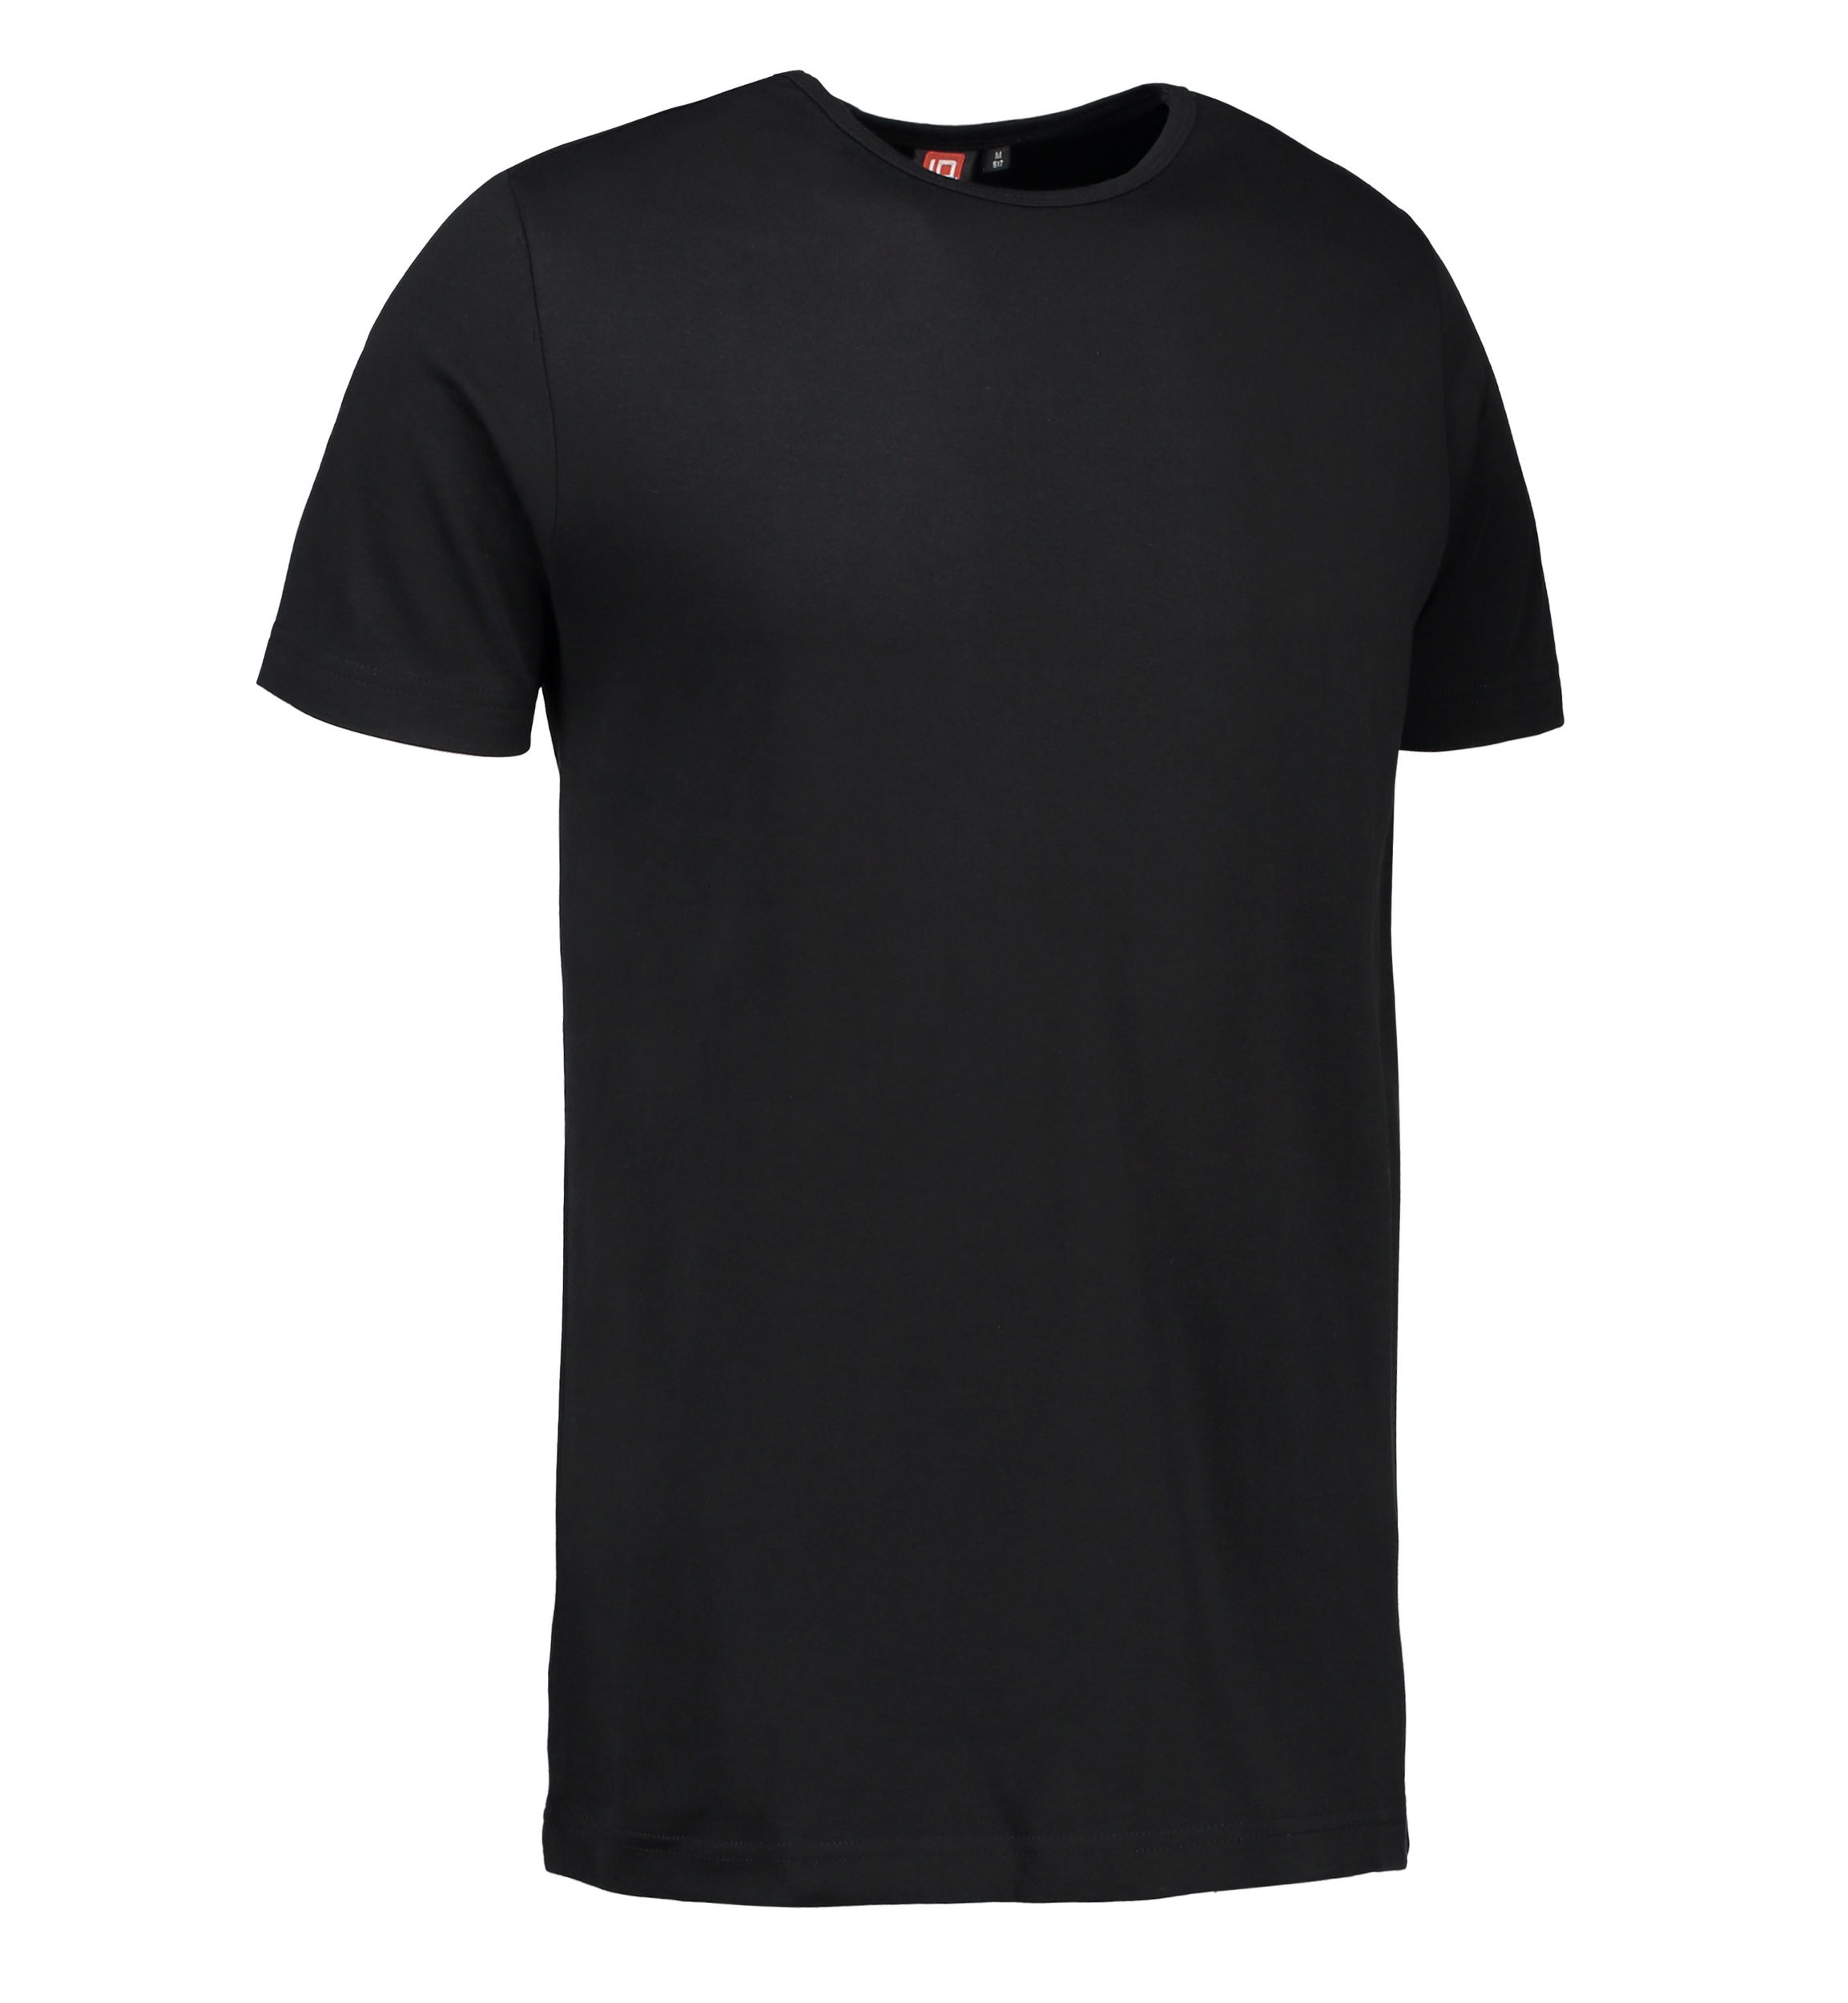 Billede af Sort t-shirt med rund hals til mænd - 3XL hos Sygeplejebutikken.dk